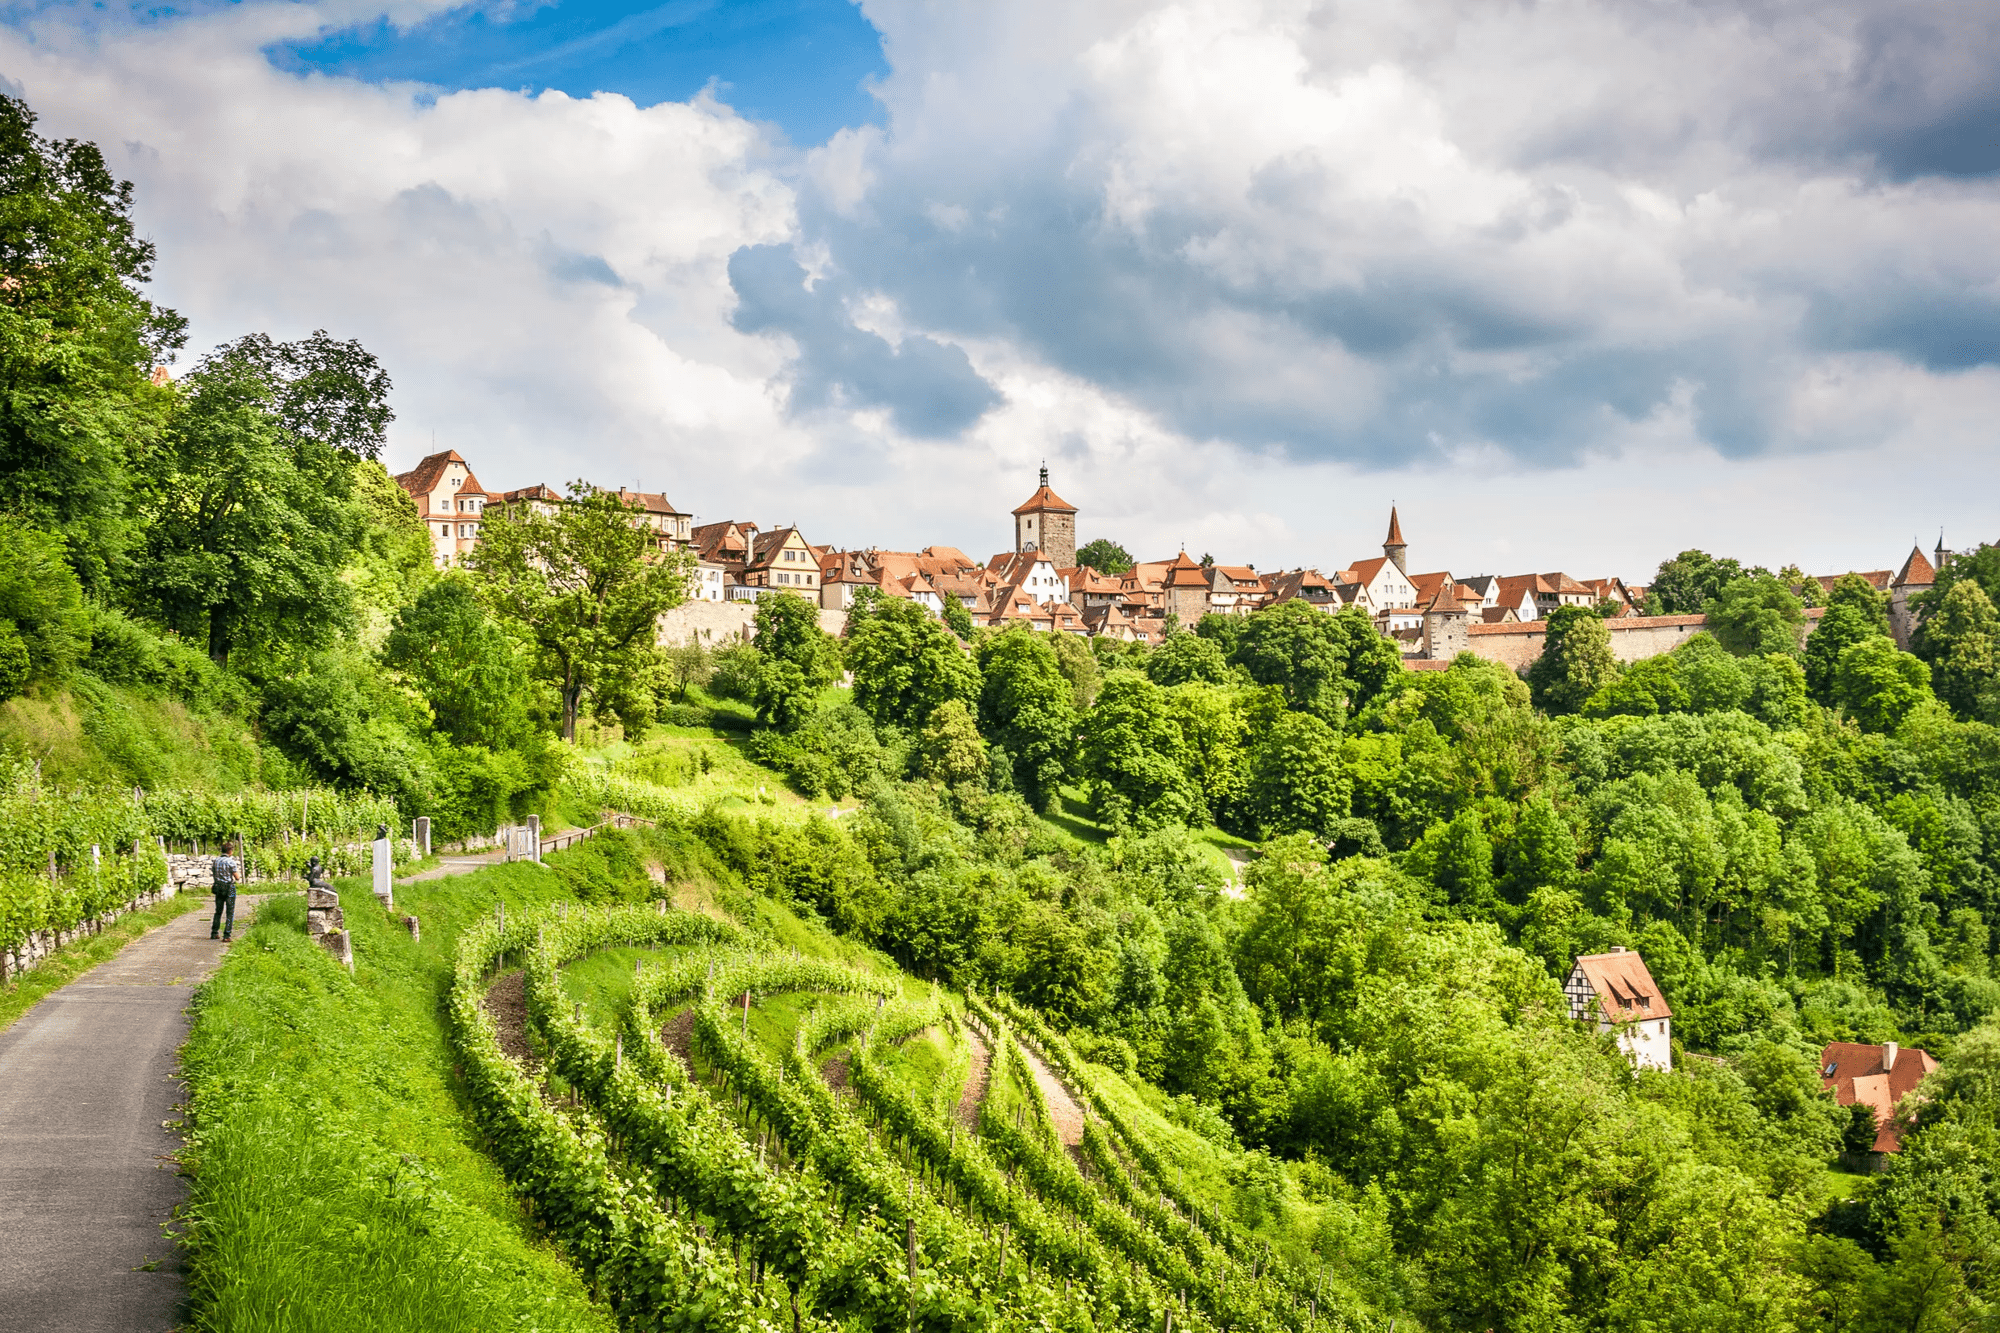 8-, 10-daagse rondreis Beieren - Droomstadjes en wijngaarden - 